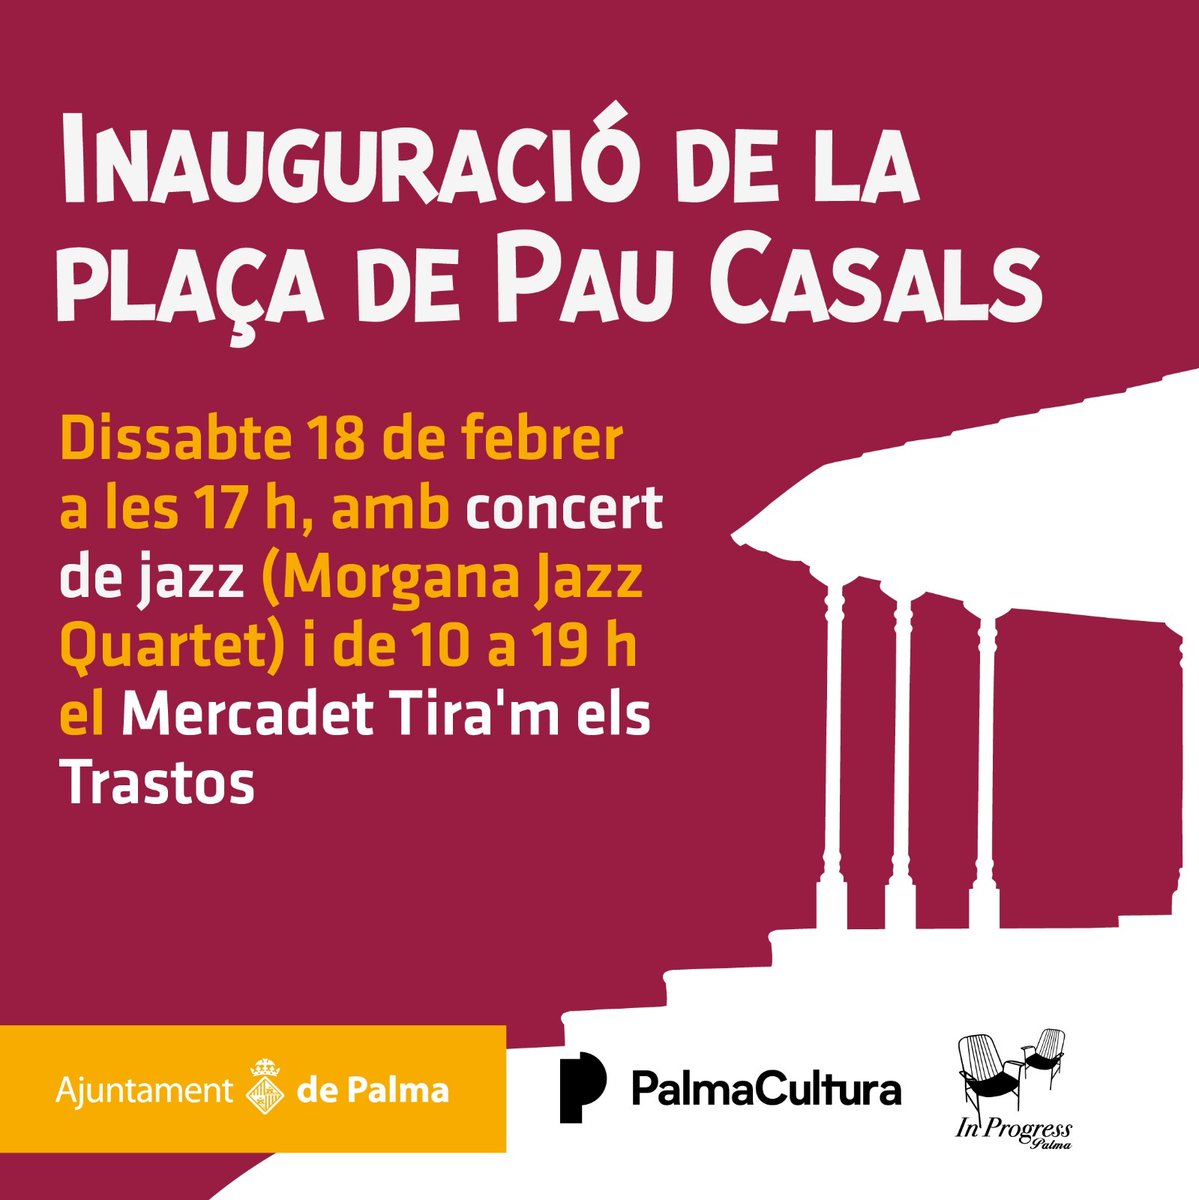 🗣️ Gente de bien de Mallorca. 🎷🎹💃Las @morgana_jazz nos vamos a tocar unos temazos el sábado en el mercadet Tira'm els trastos! Sábado, mercadet, jazz....piénsalo............💝 #womeninjazz #womeninmusic